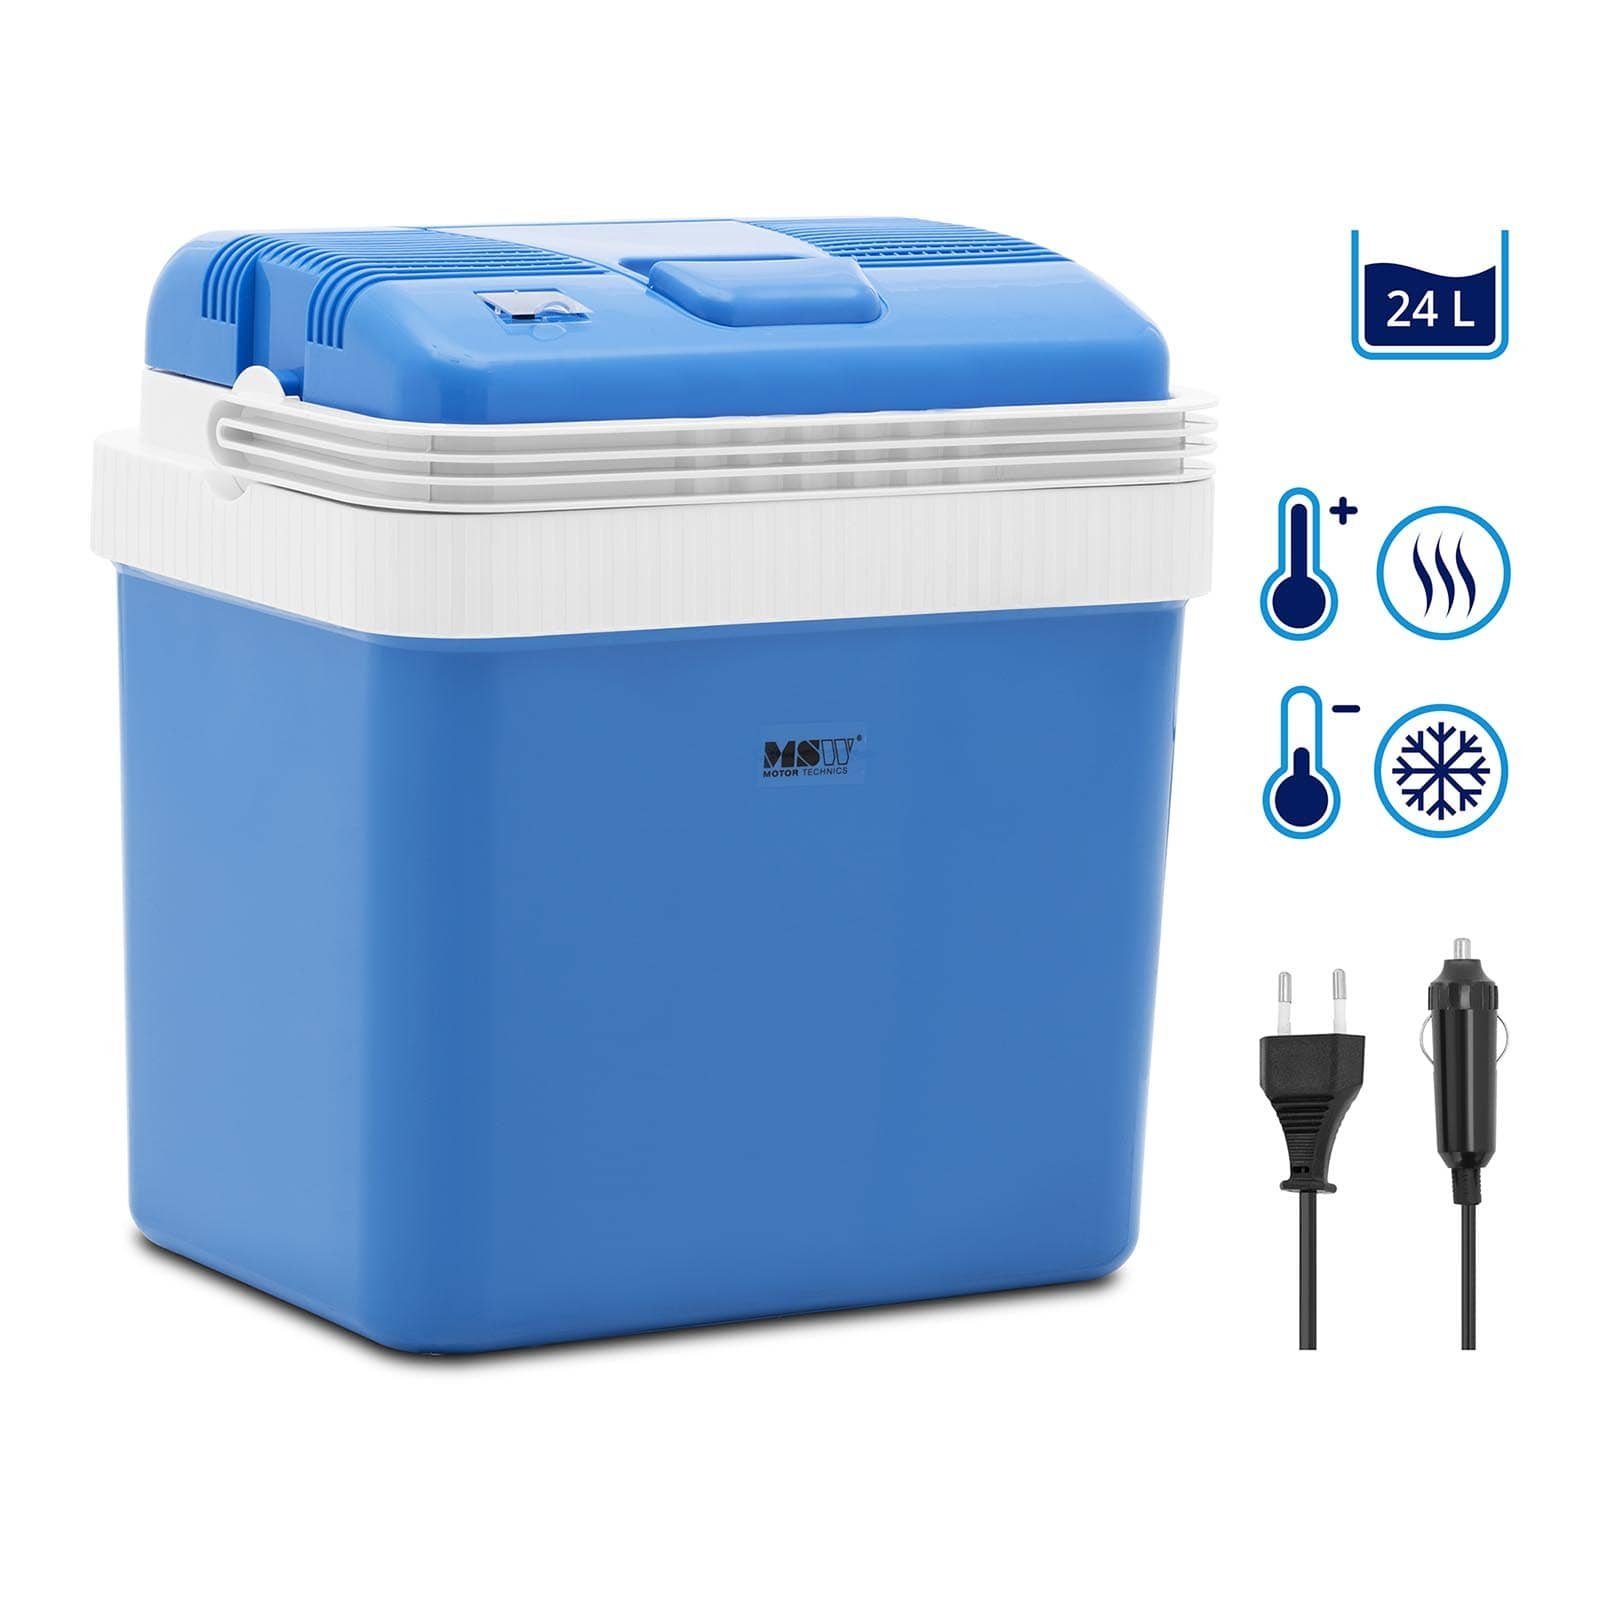 Clatronic® Elektrische Kühltasche, 15 Liter